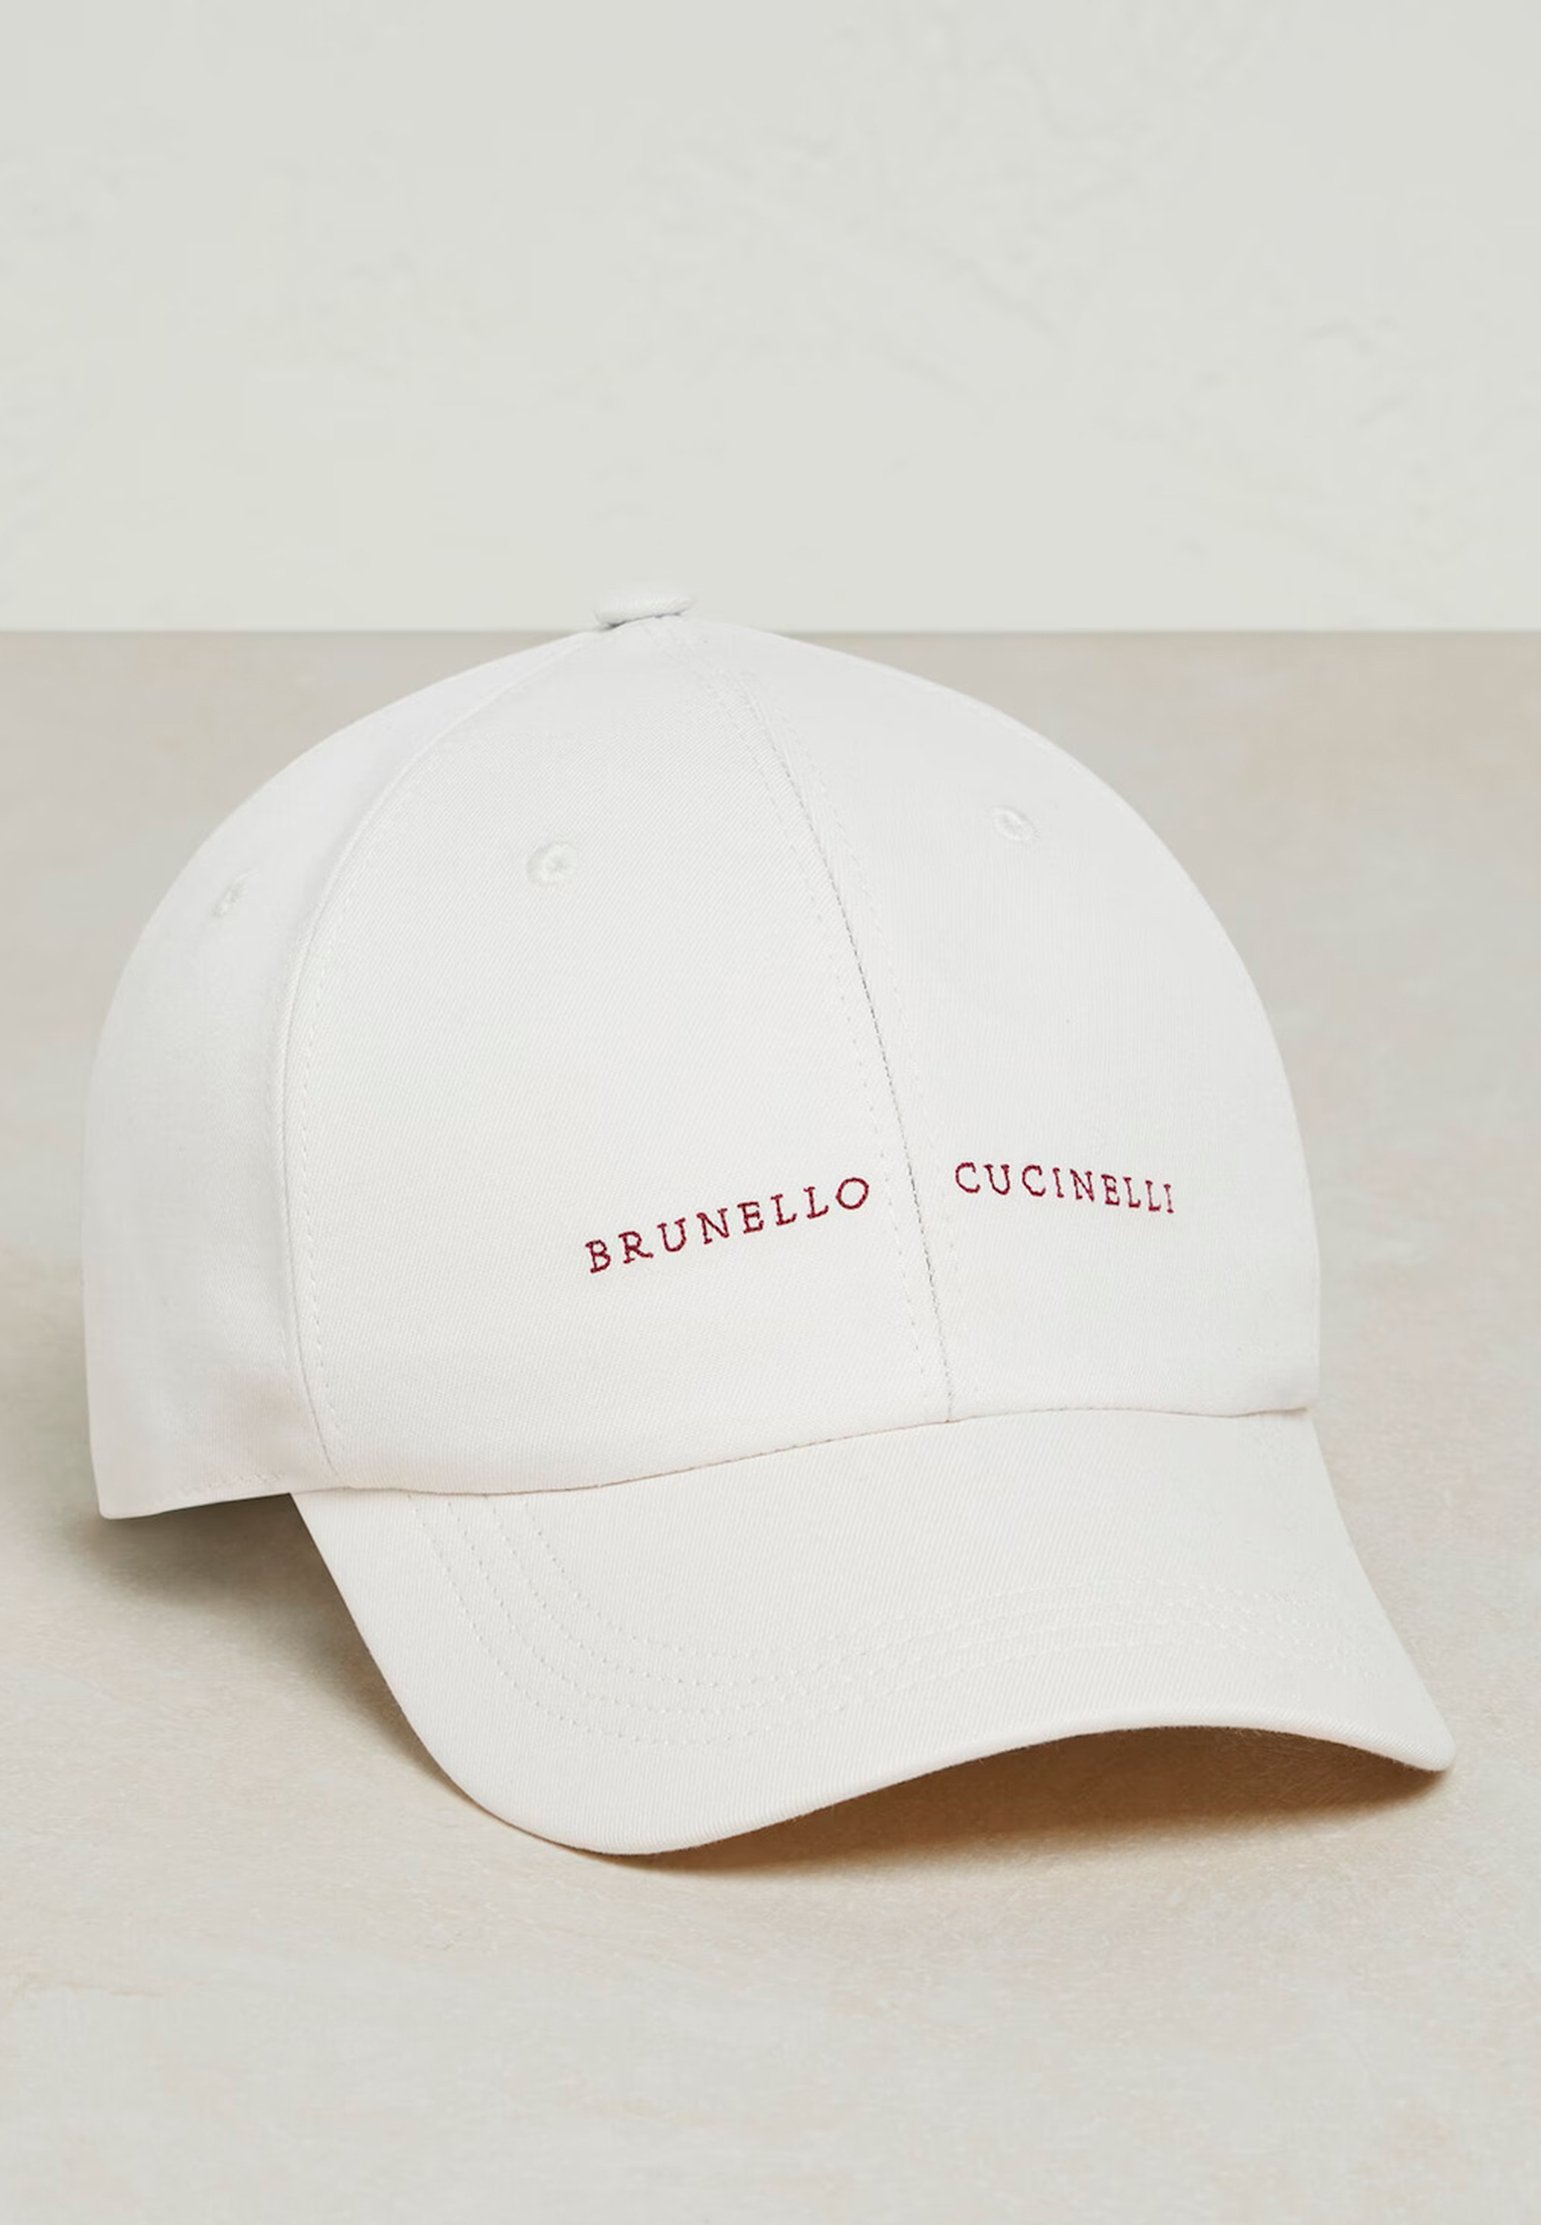 Bonnet BRUNELLO CUCINELLI Color: white (Code: 1520) in online store Allure